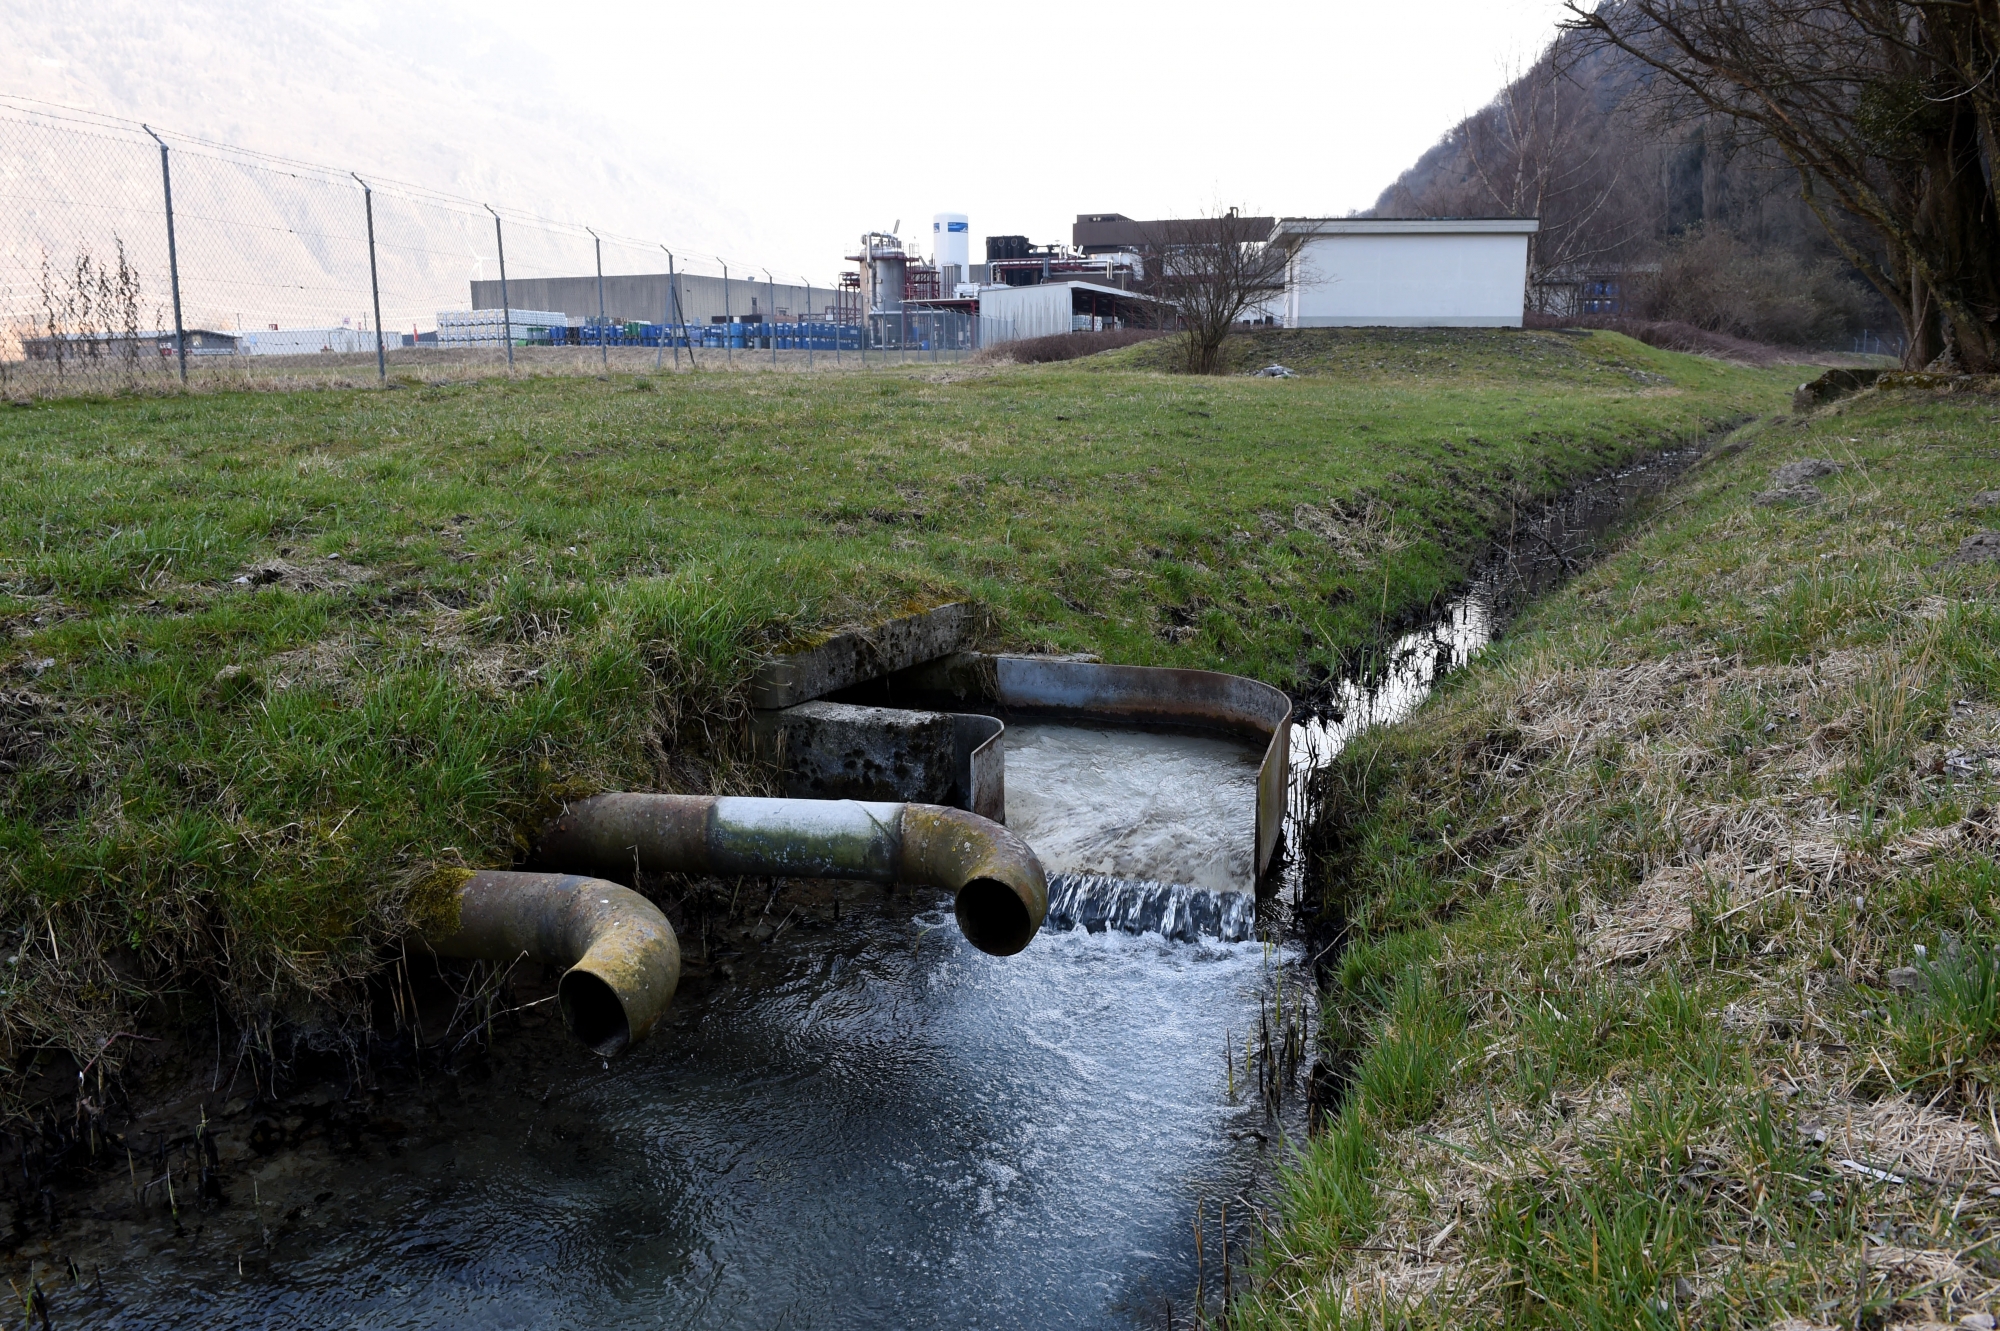 Les collectivités publiques pourraient devoir prendre en charge l’assainissement du canal de la Balmaz, estimé à environ un million de francs.